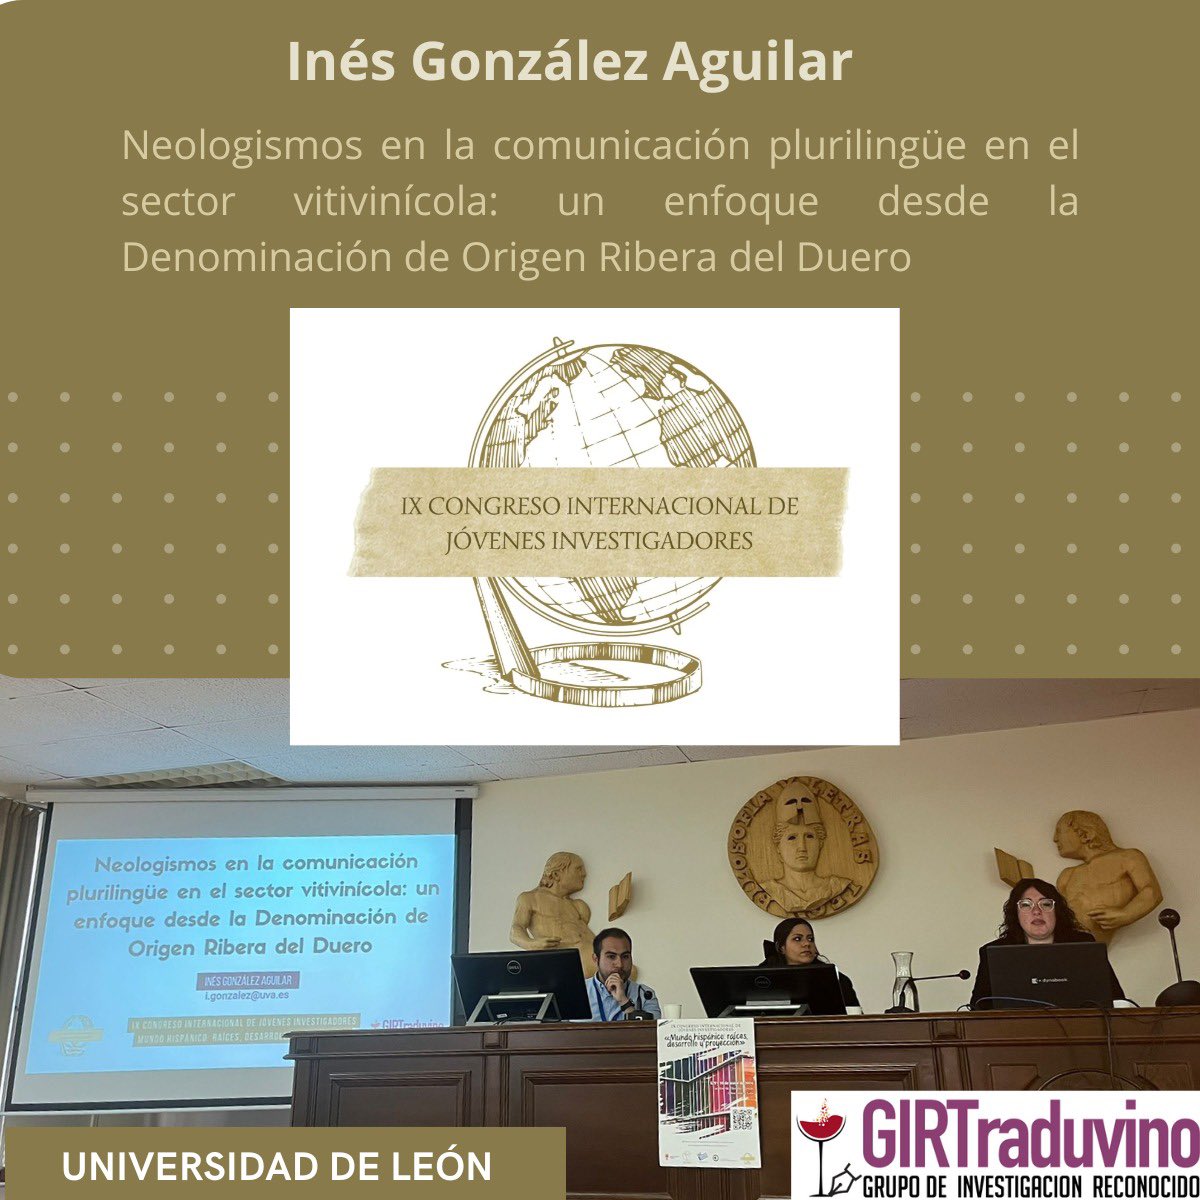 🕵️‍♀️📚Ayer terminó la novena edición del congreso para jóvenes investigadores: Mundo Hispánico organizado en la @unileon . 👩🏻‍💻La Dra. @inesgzlzaguilar participó con una comunicación sobre neologismos que aportó nuevos datos sobre las estrategias lingüísticas del sector vitivinícola